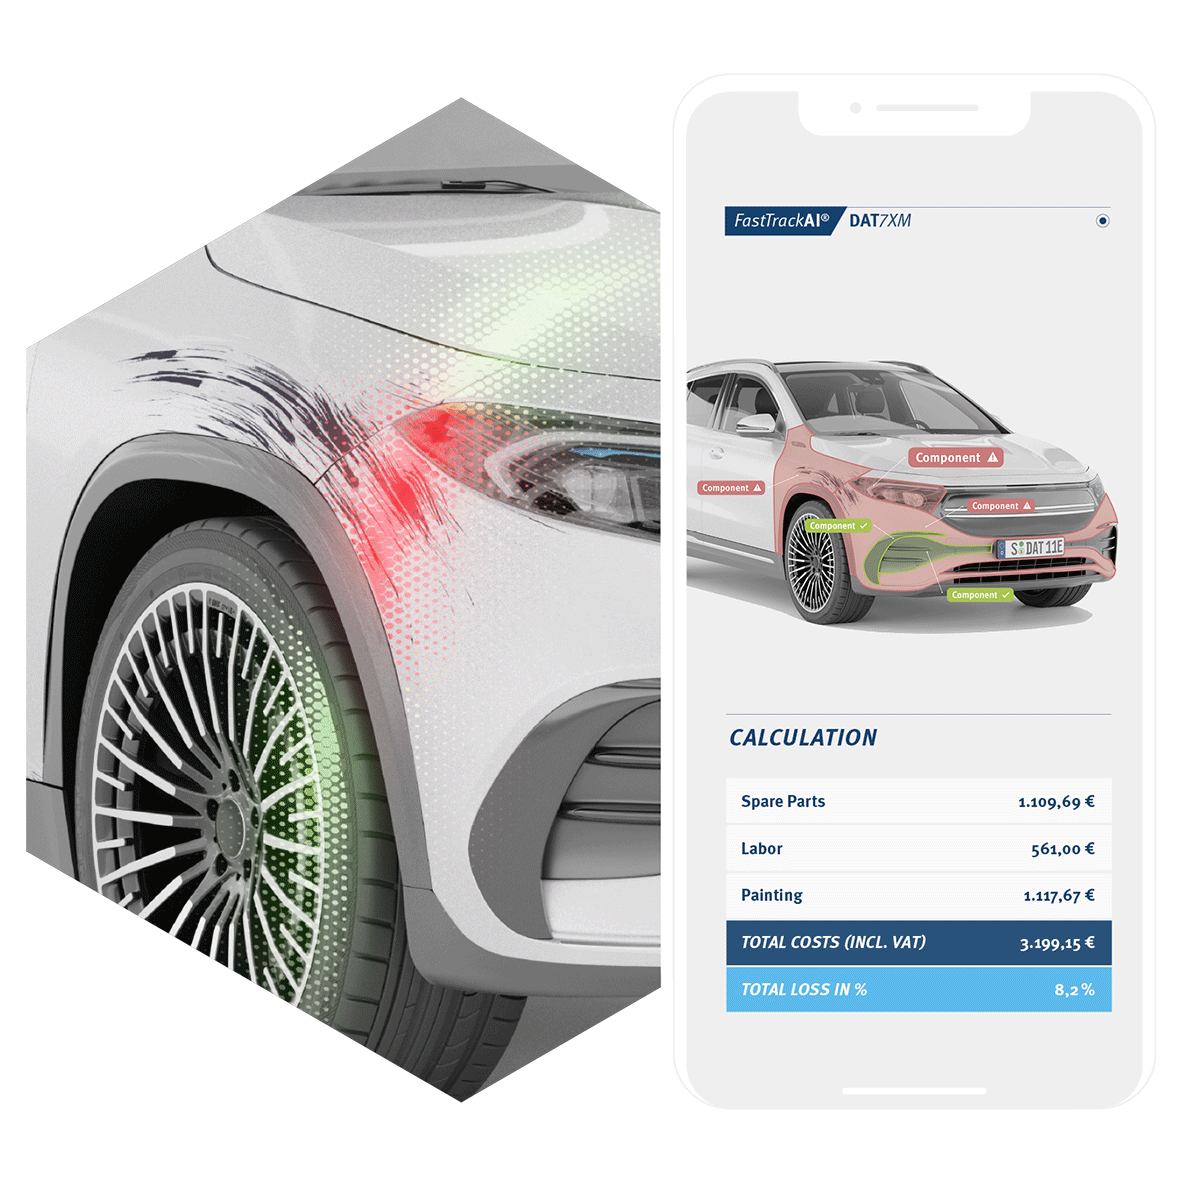 Screenshot der Smartphone-App FastTrack AI: Der Schaden des Auto am rechten Kotflügel wurde per Handy-Foto erfasst und wird auf dem Handy-Bildschirm digital abgebildet. Per künstlicher Intelligenz wird die Schadenhöhe - bestehen aus Ersatzteil-Kosten, Arbeitszeit und Lackier-Arbeiten - berechnet.